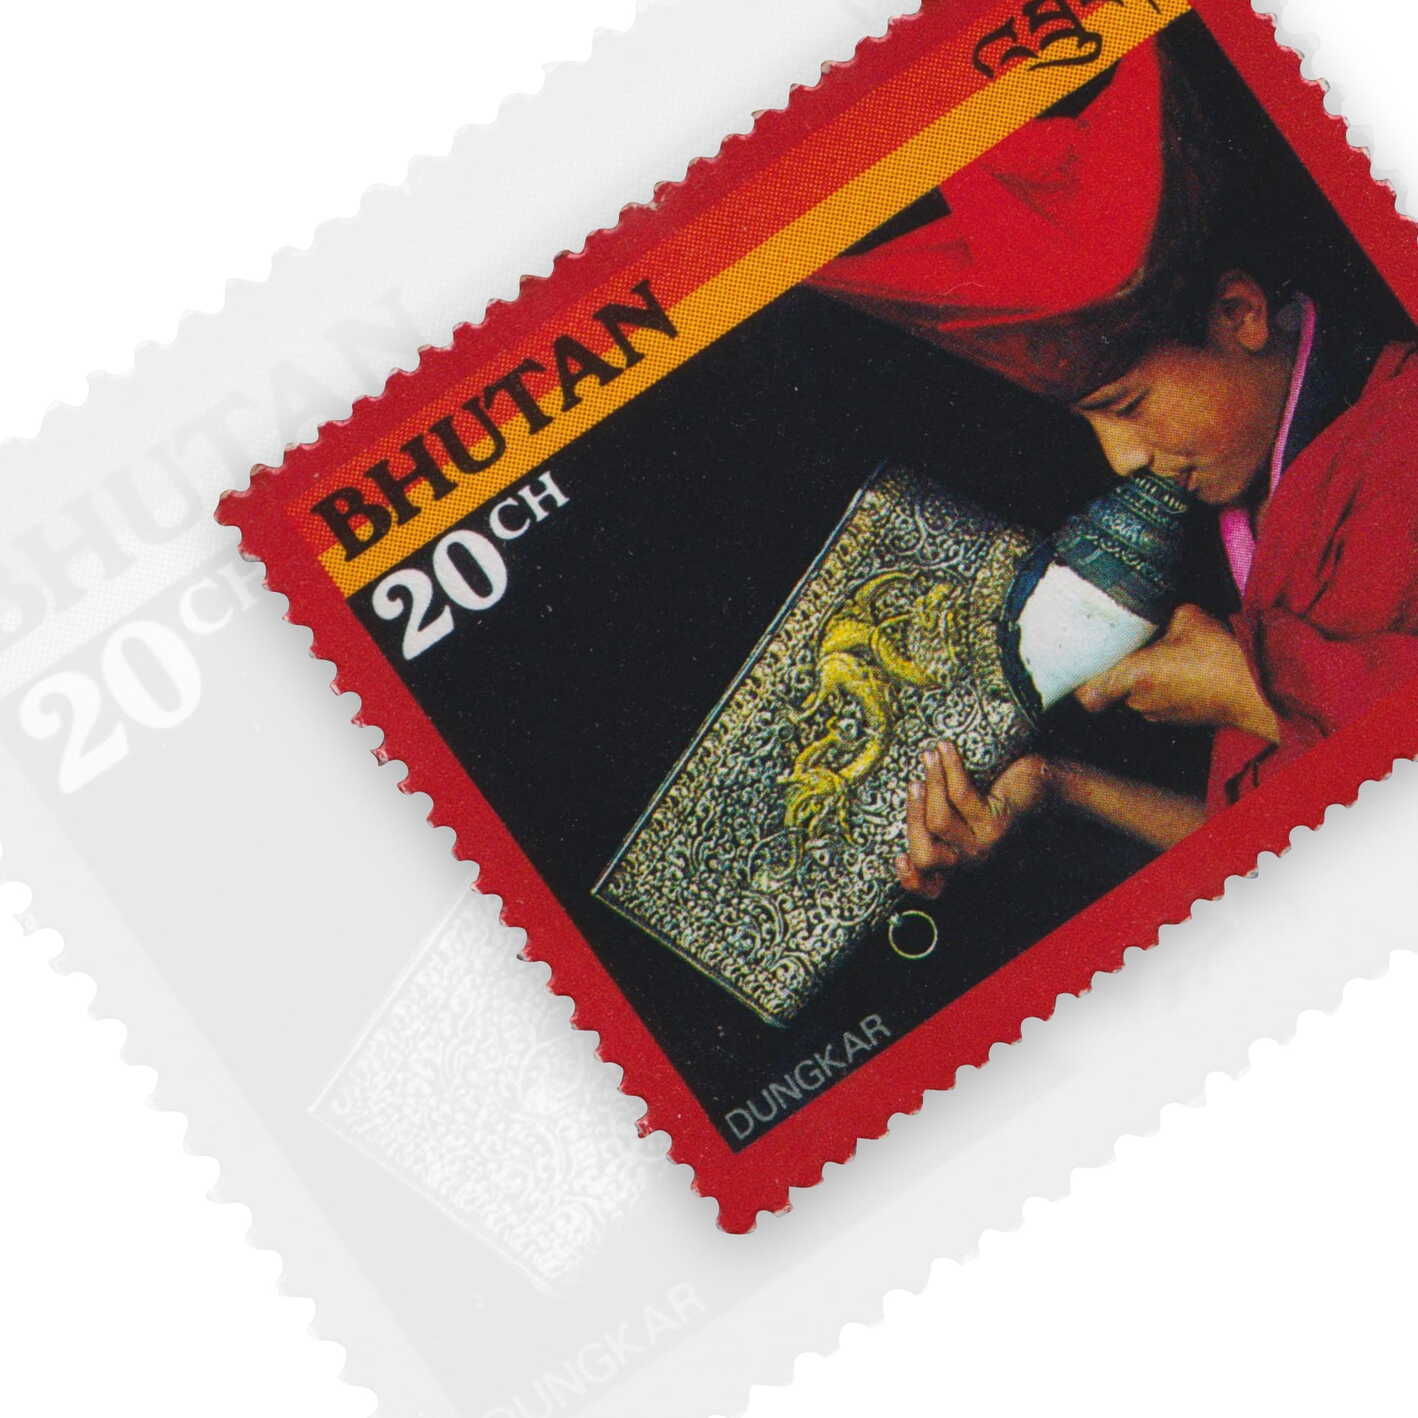 Bhutan Stamps